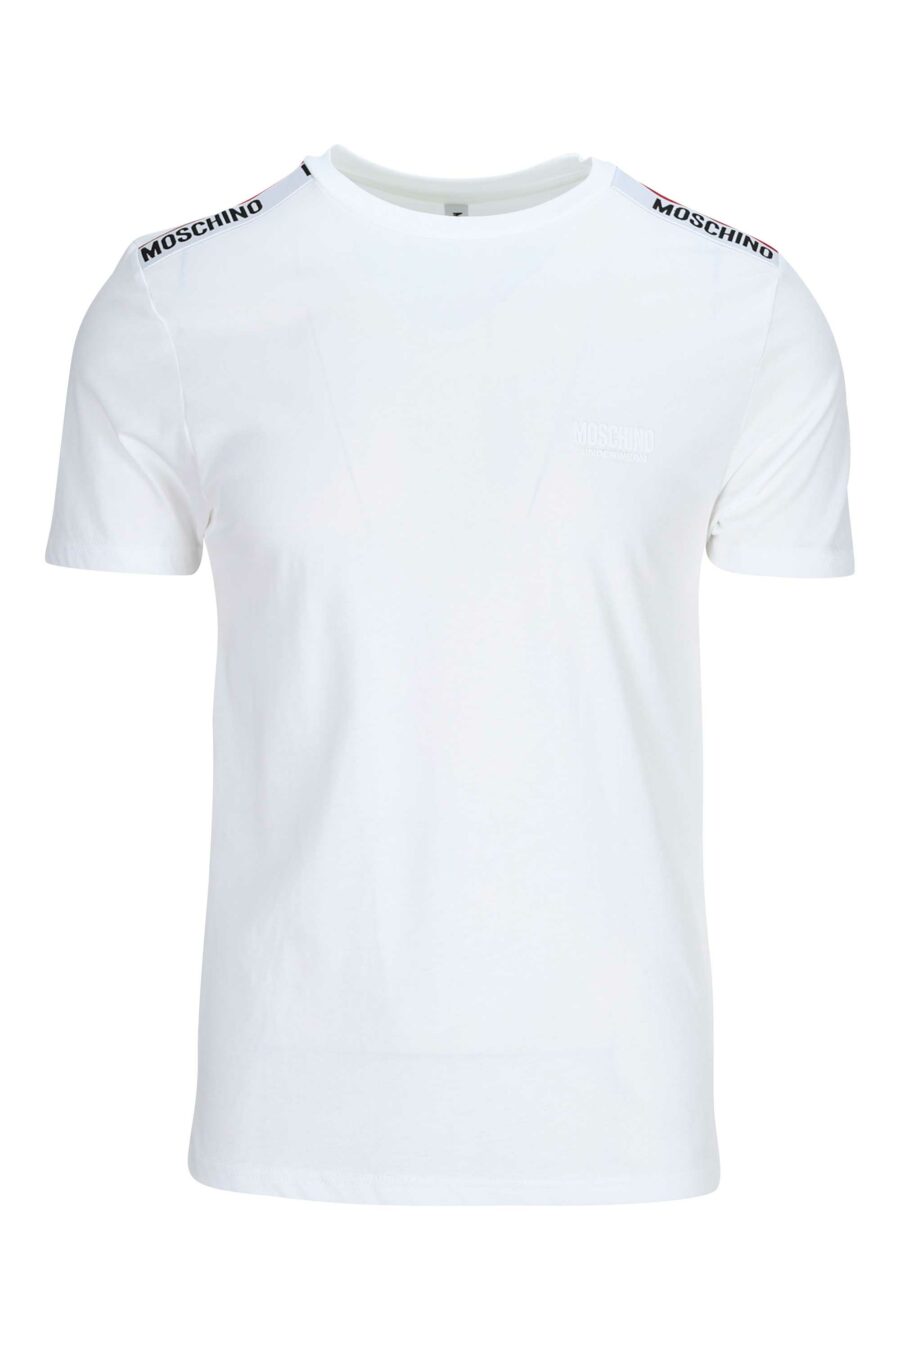 T-shirt blanc avec logo en ruban sur les épaules - 667113024998